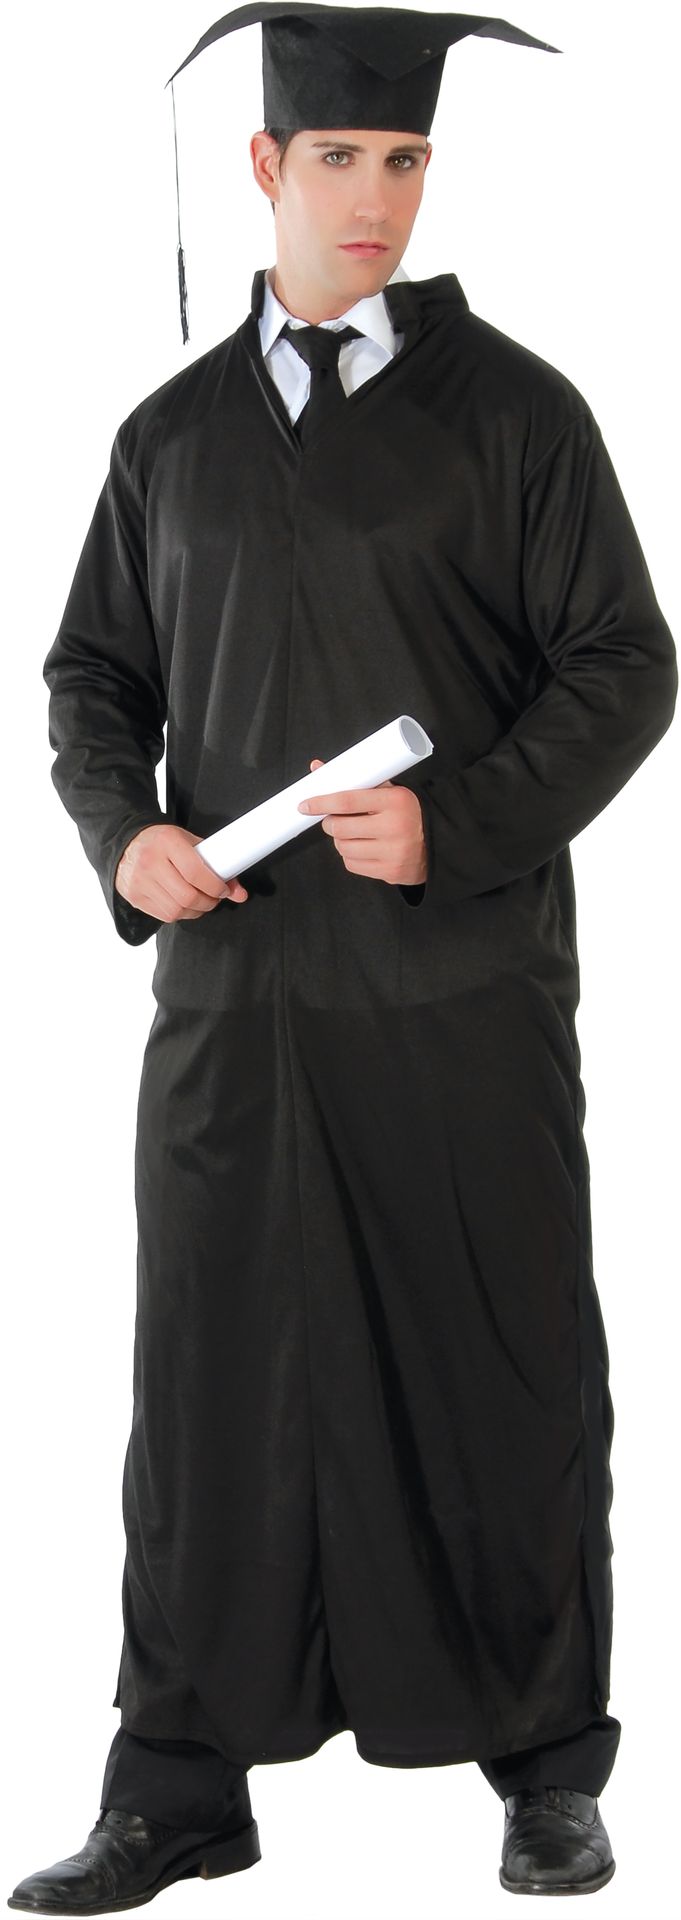 Student monnik rechter kostuum